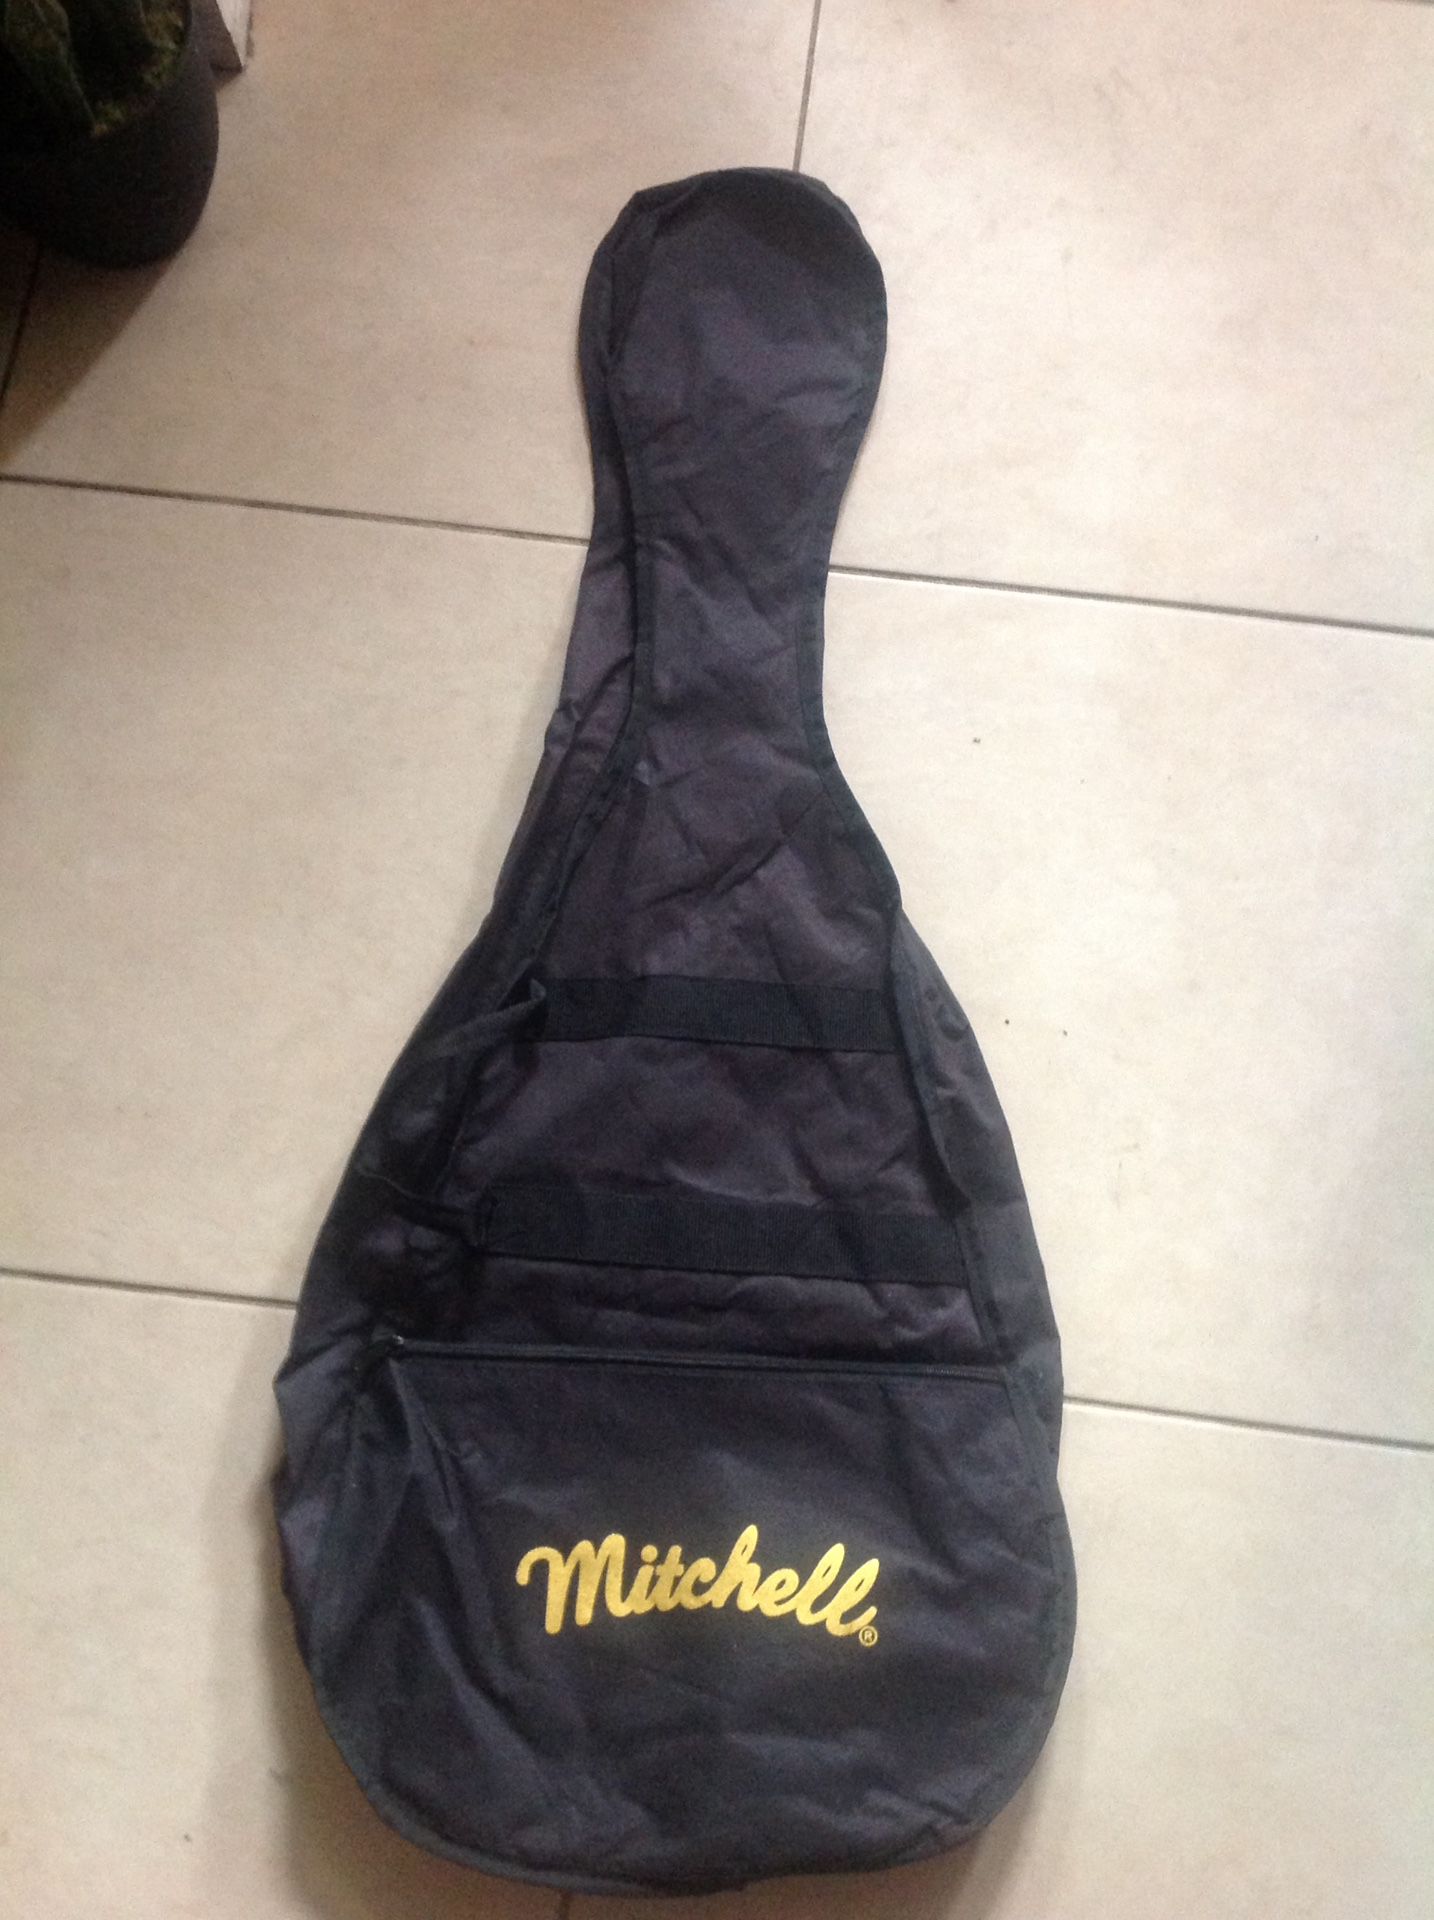 Mitchell guitar soft bag